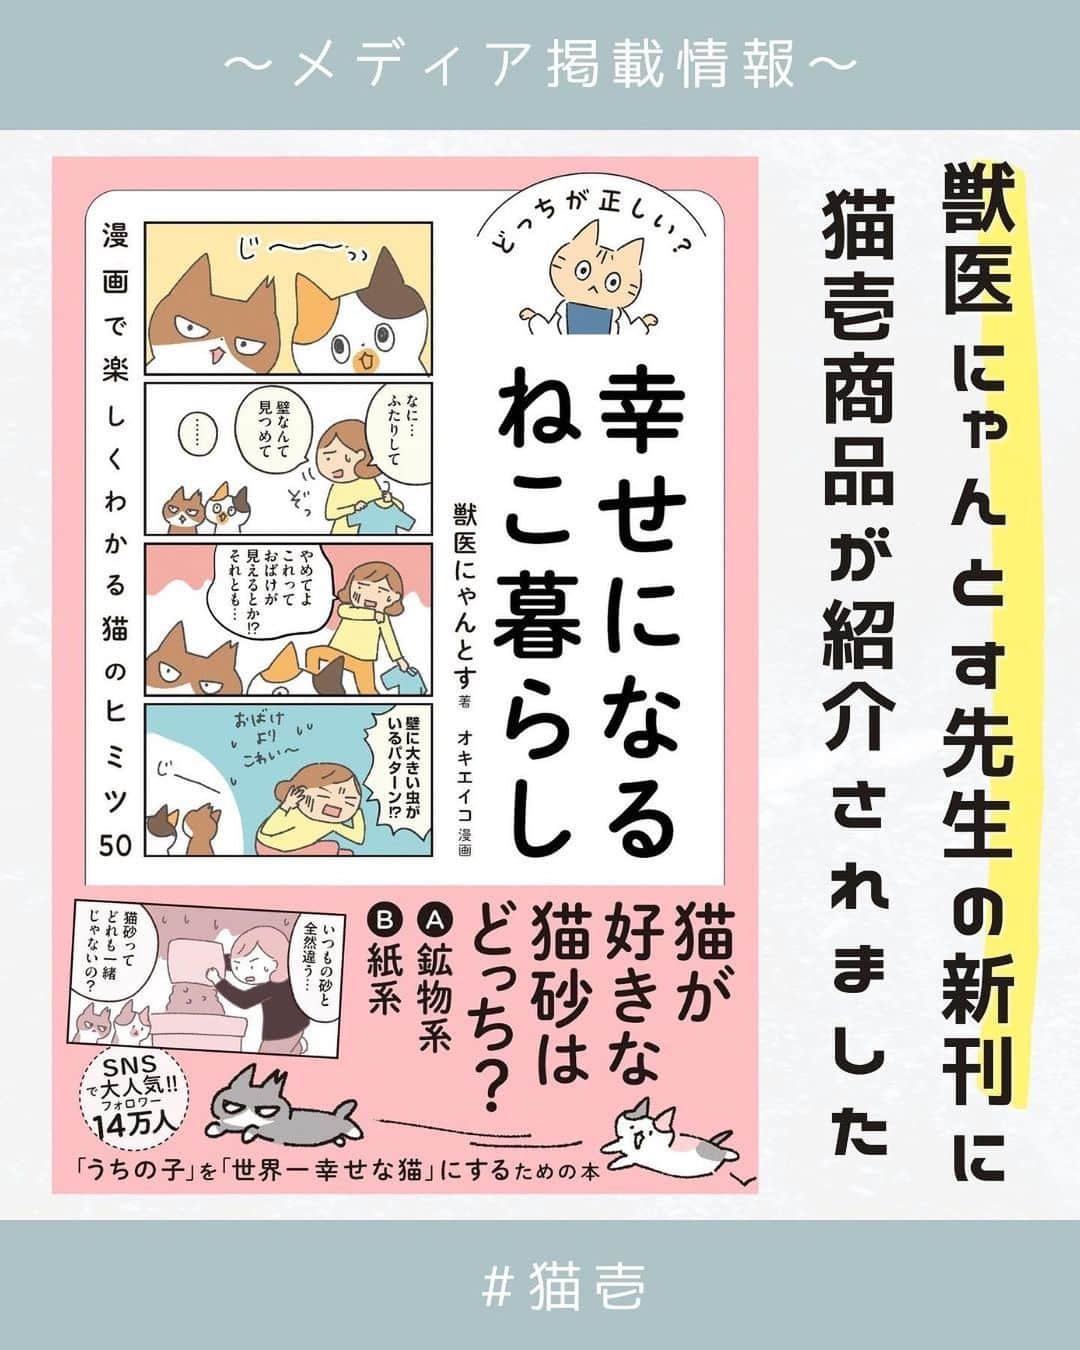 猫壱（ねこいち•ネコイチ）のインスタグラム：「猫壱商品が、獣医にゃんとす先生の新刊に紹介されました♪ 大切なねこちゃんと幸せに暮らすためのヒントがたっぷり詰まった１冊です。  ーーーー書籍情報ーーーー  書籍タイトル：どっちが正しい？幸せになるねこ暮らし 著者：獣医にゃんとす 漫画：オキエイコ 出版社：株式会社ワニブックス 発売日：2023年10月20日 価格：1,400円（税抜） 販売書店：全国の書店、Amazonなどのオンライン書店  ぜひ、お近くの書店やAmazonなどからチェックしてみてくださいね♪  :::::::::猫壱 :::::::  Reproduction is prohibited.  ...........................................................................  #猫壱 #猫壱からのお知らせ #バリバリボウルタワー #猫用爪切り #ハッピーダイニング #脚付フードボウル #キャットトンネル ...........................................................................」